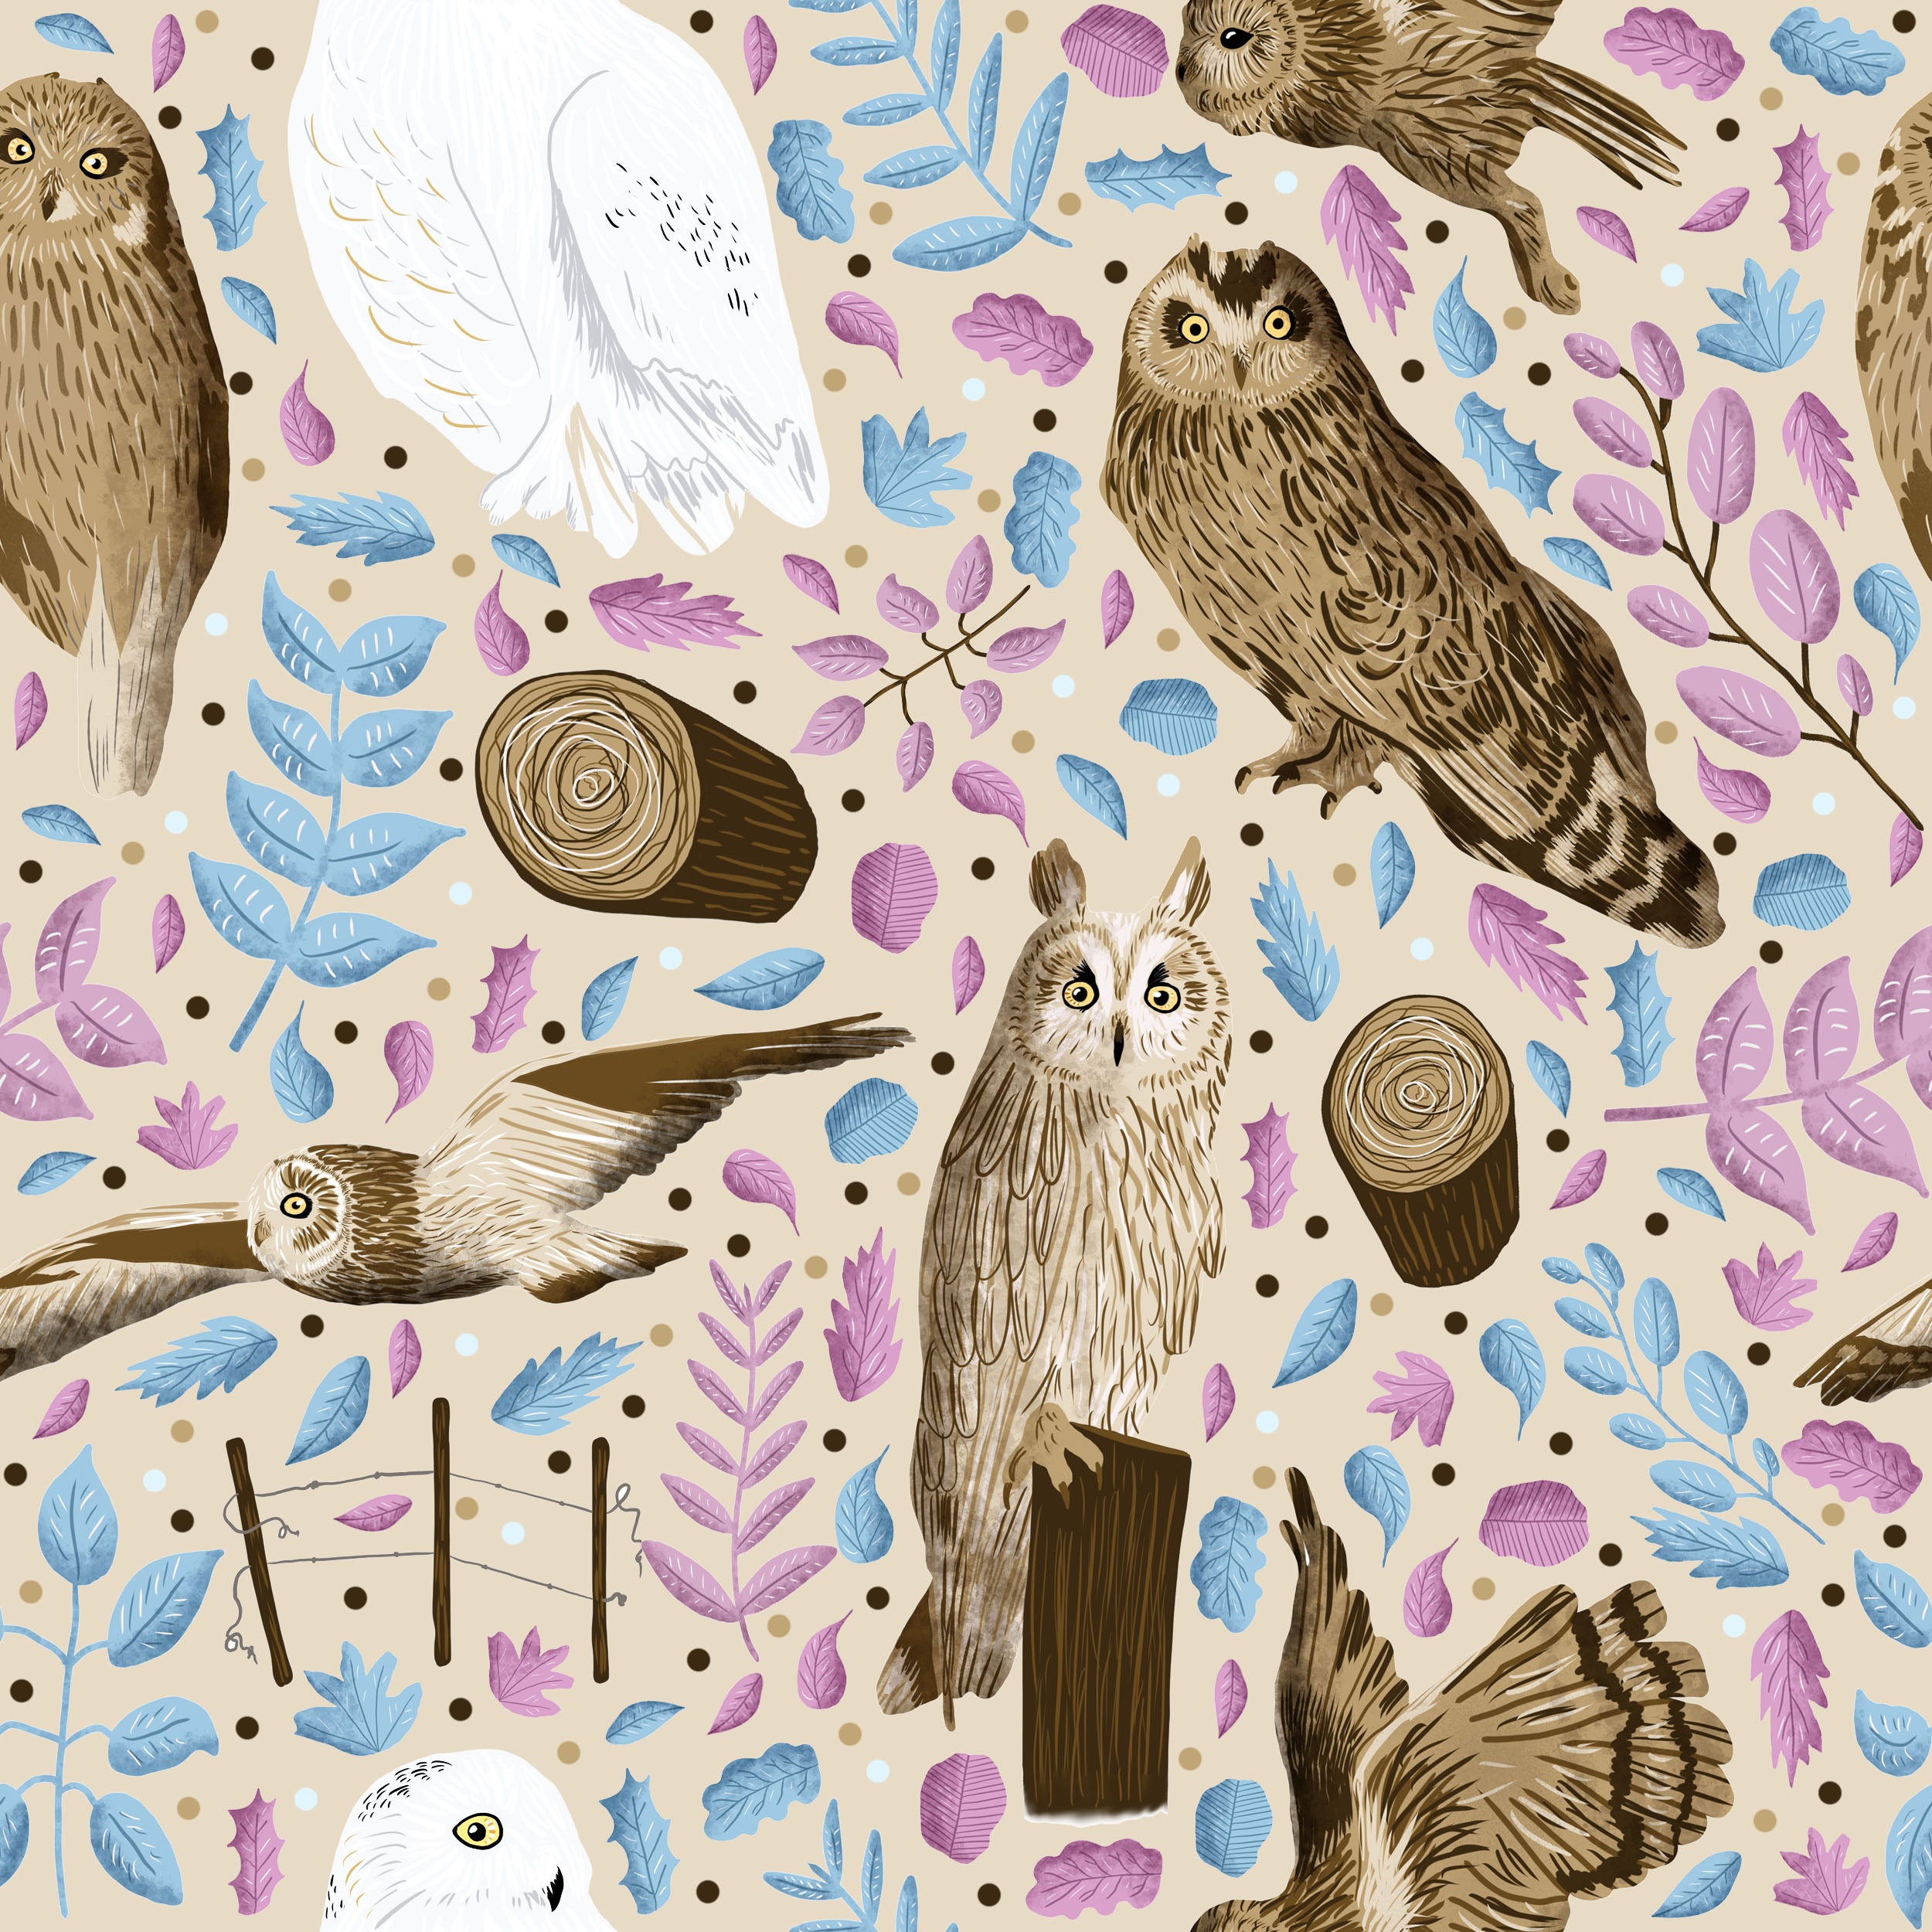 British birds of prey owls in a surface pattern design